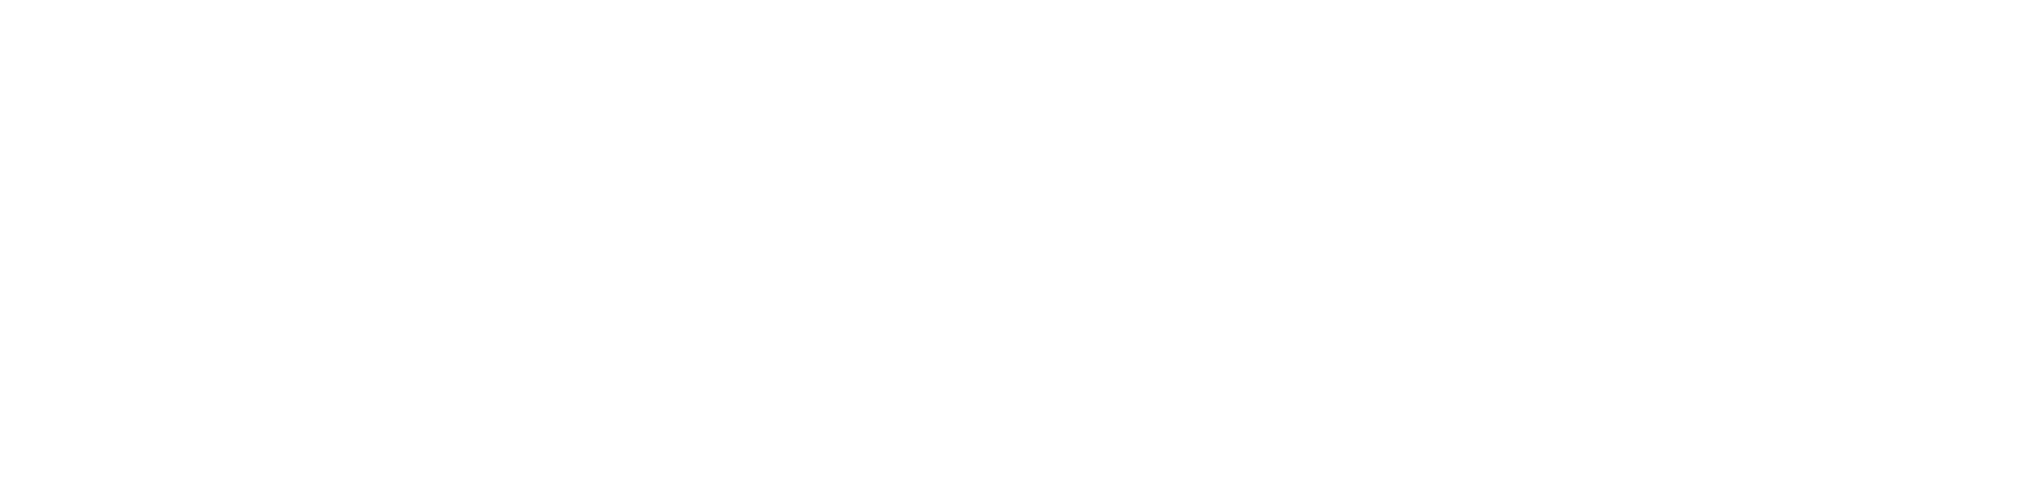 Centaur Financial Services